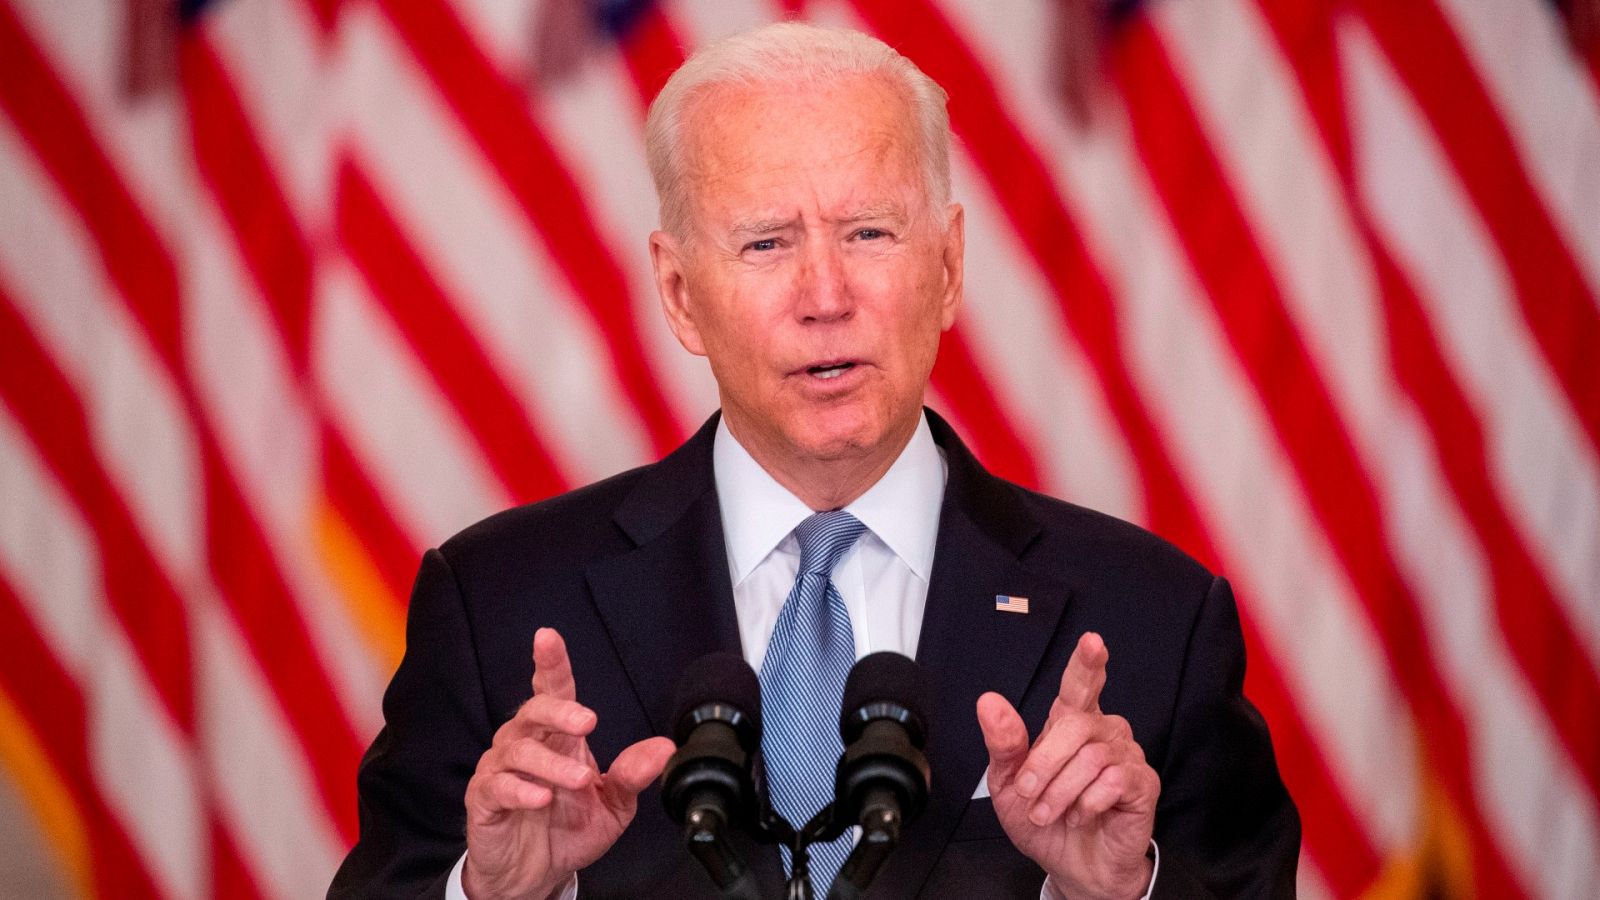 Joe Biden defiende su papel en el conflicto afgano